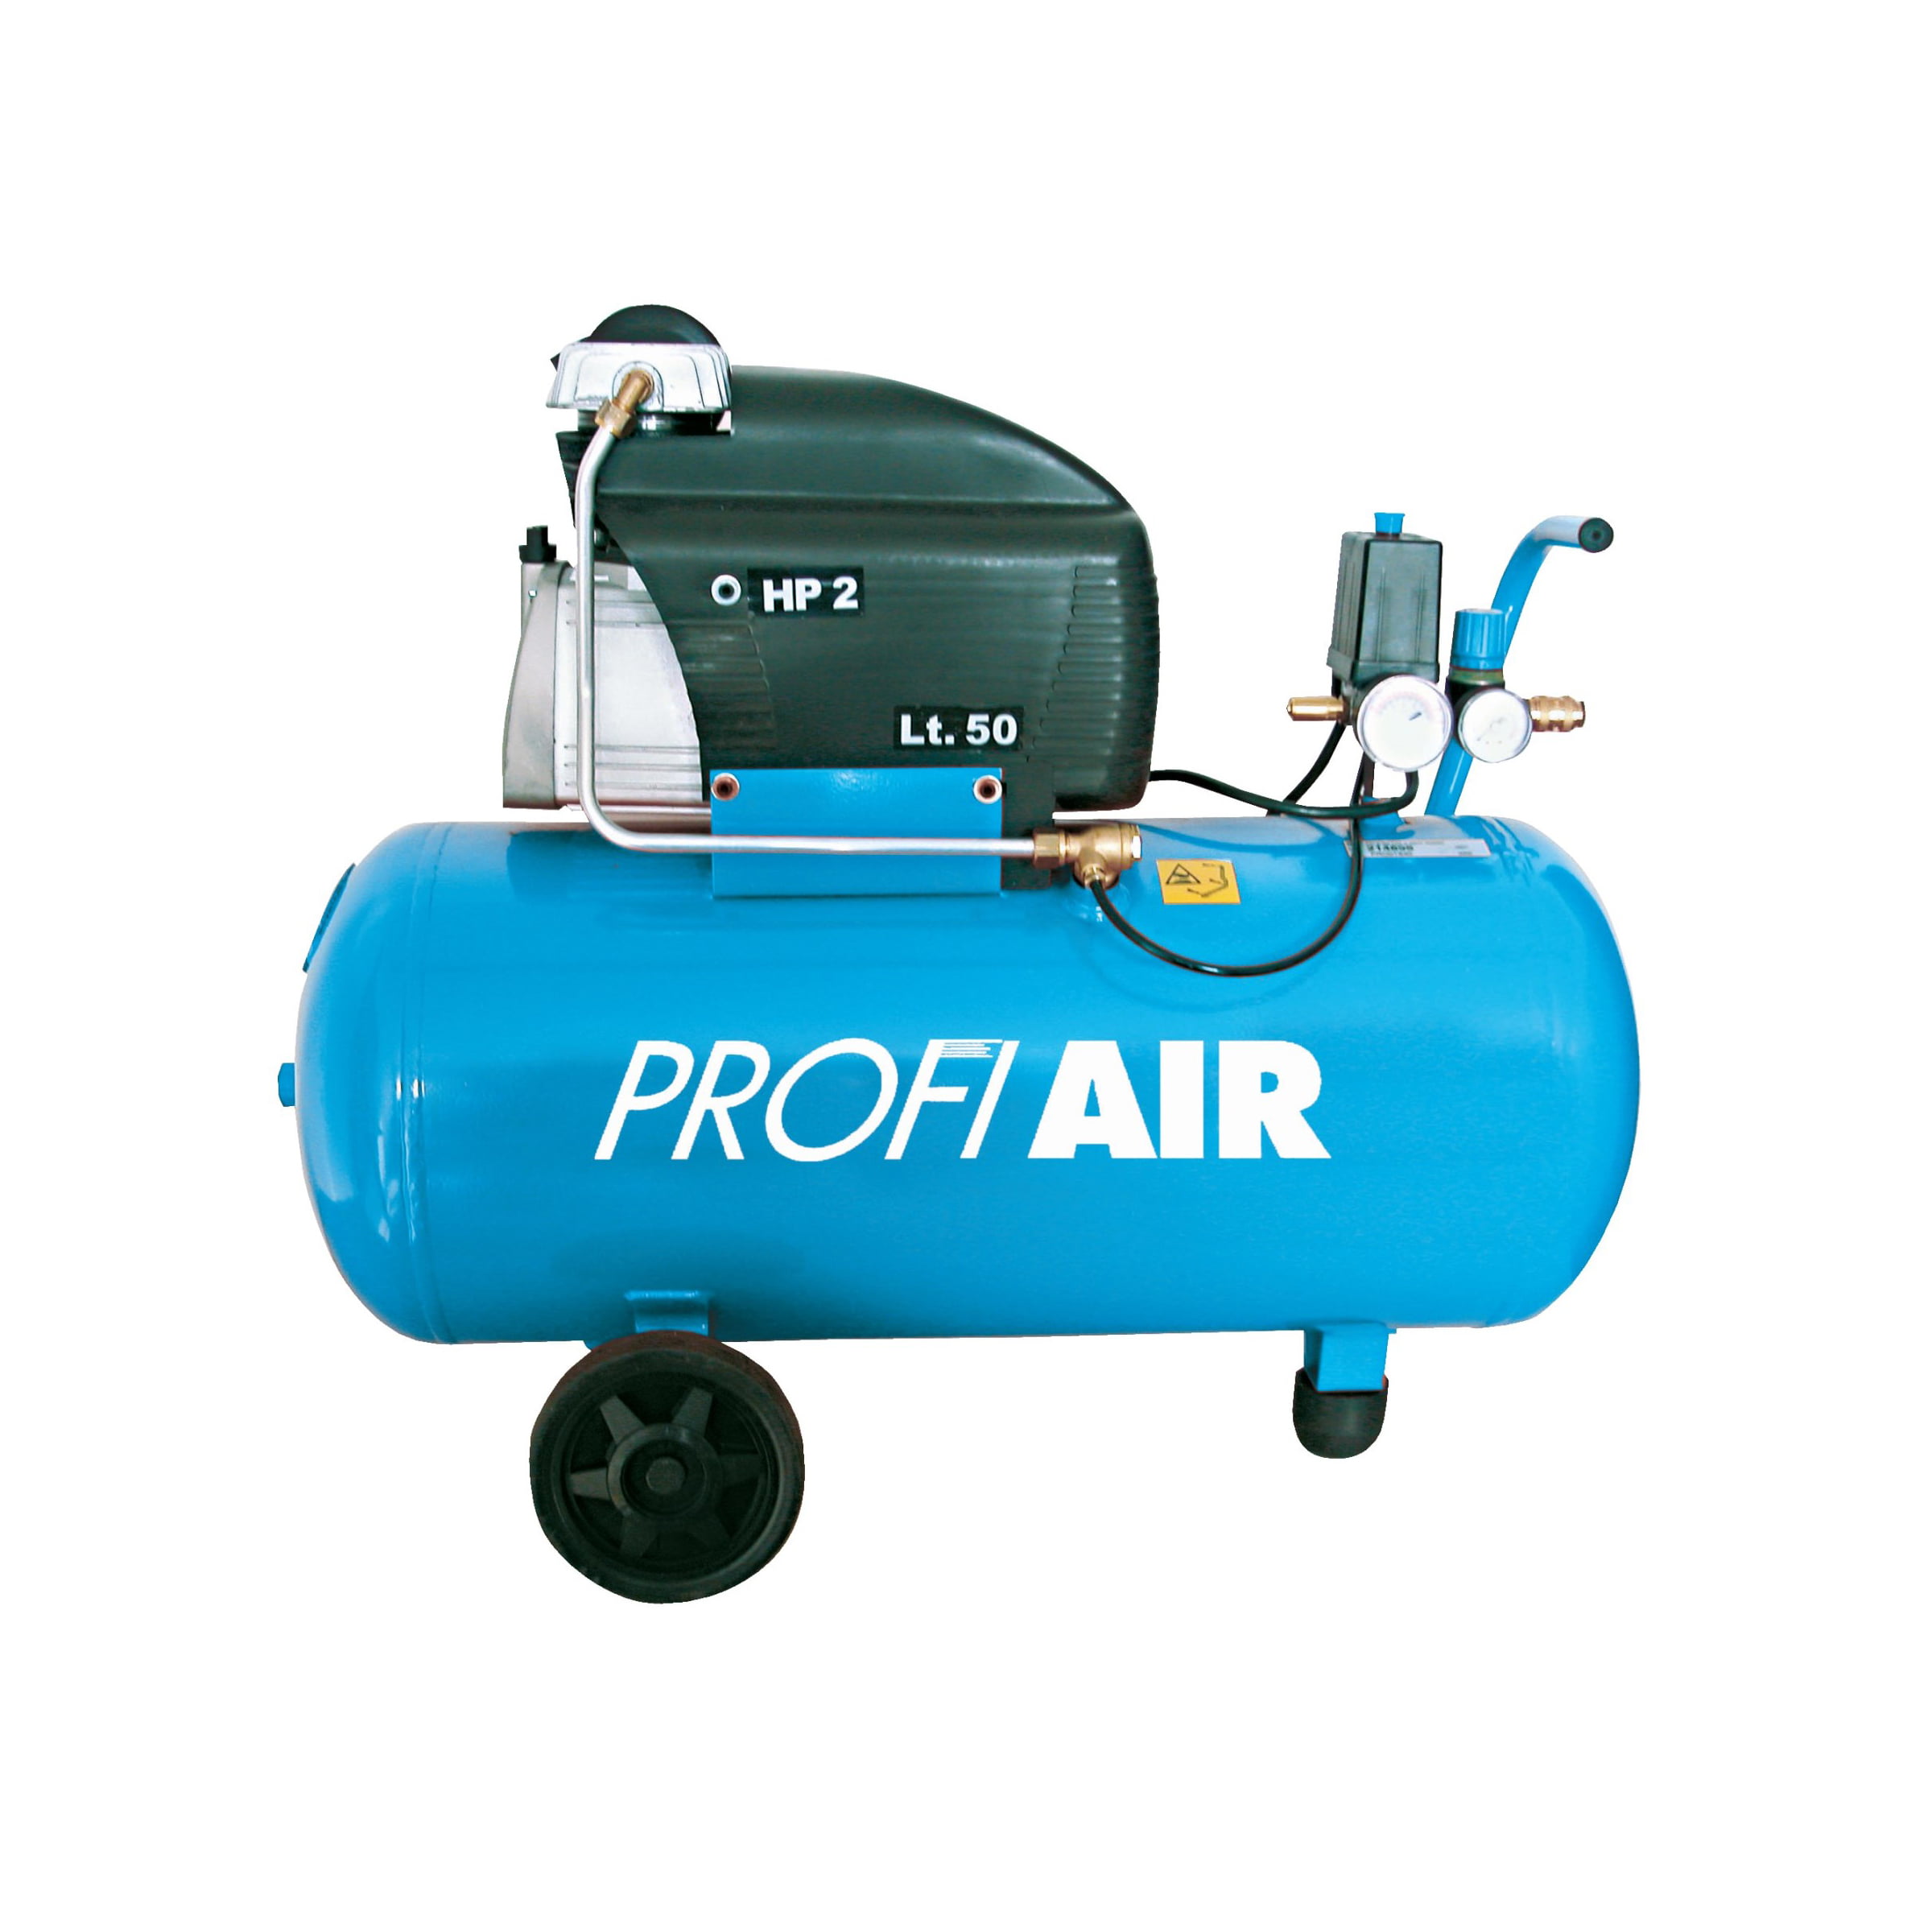 Profi Air kompresor za vazduh zrak 250/8/50 50L - masineialati.ba -  Profesionalni i hobi alati i mašine